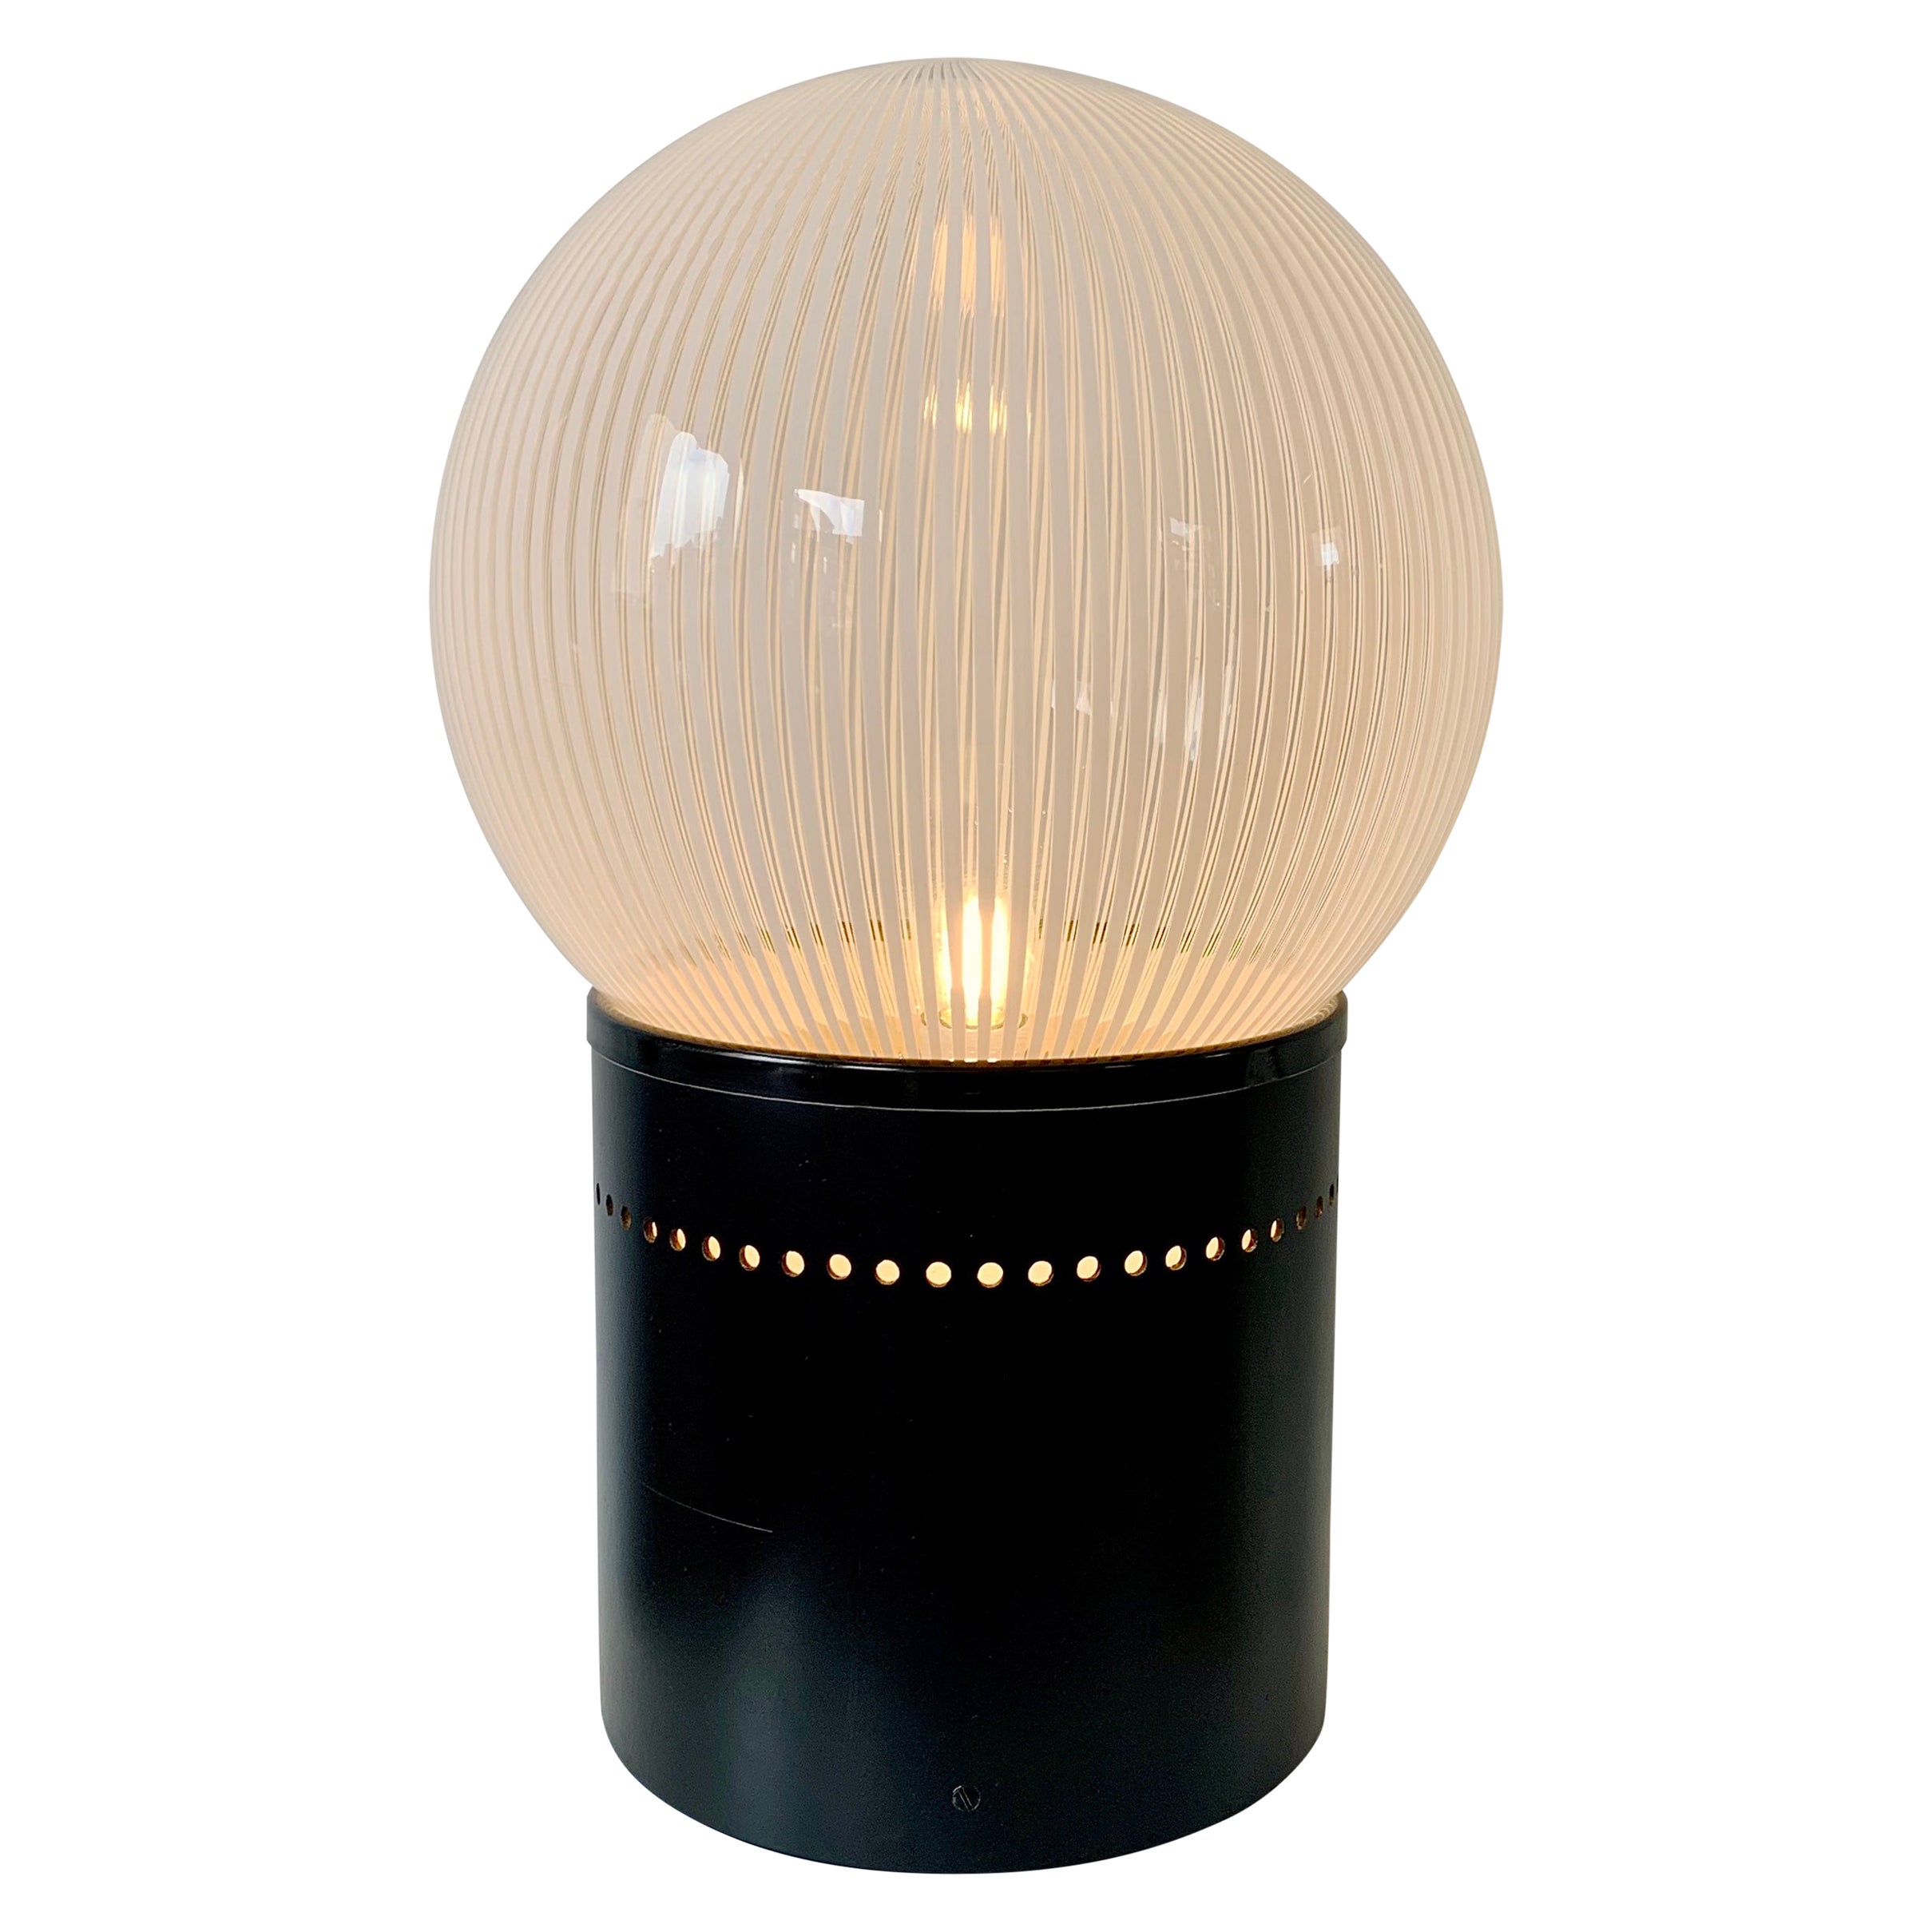 Lampe de table en verre Venini, vers 1960, Italie.
Sphère en verre Venini blanc et transparent strié sur une base laquée noire.
Recâblé, prêt à l'emploi.
Dimensions :  56 cm de hauteur, 34 cm de diamètre.
Bon état d'origine.
Tous les achats sont